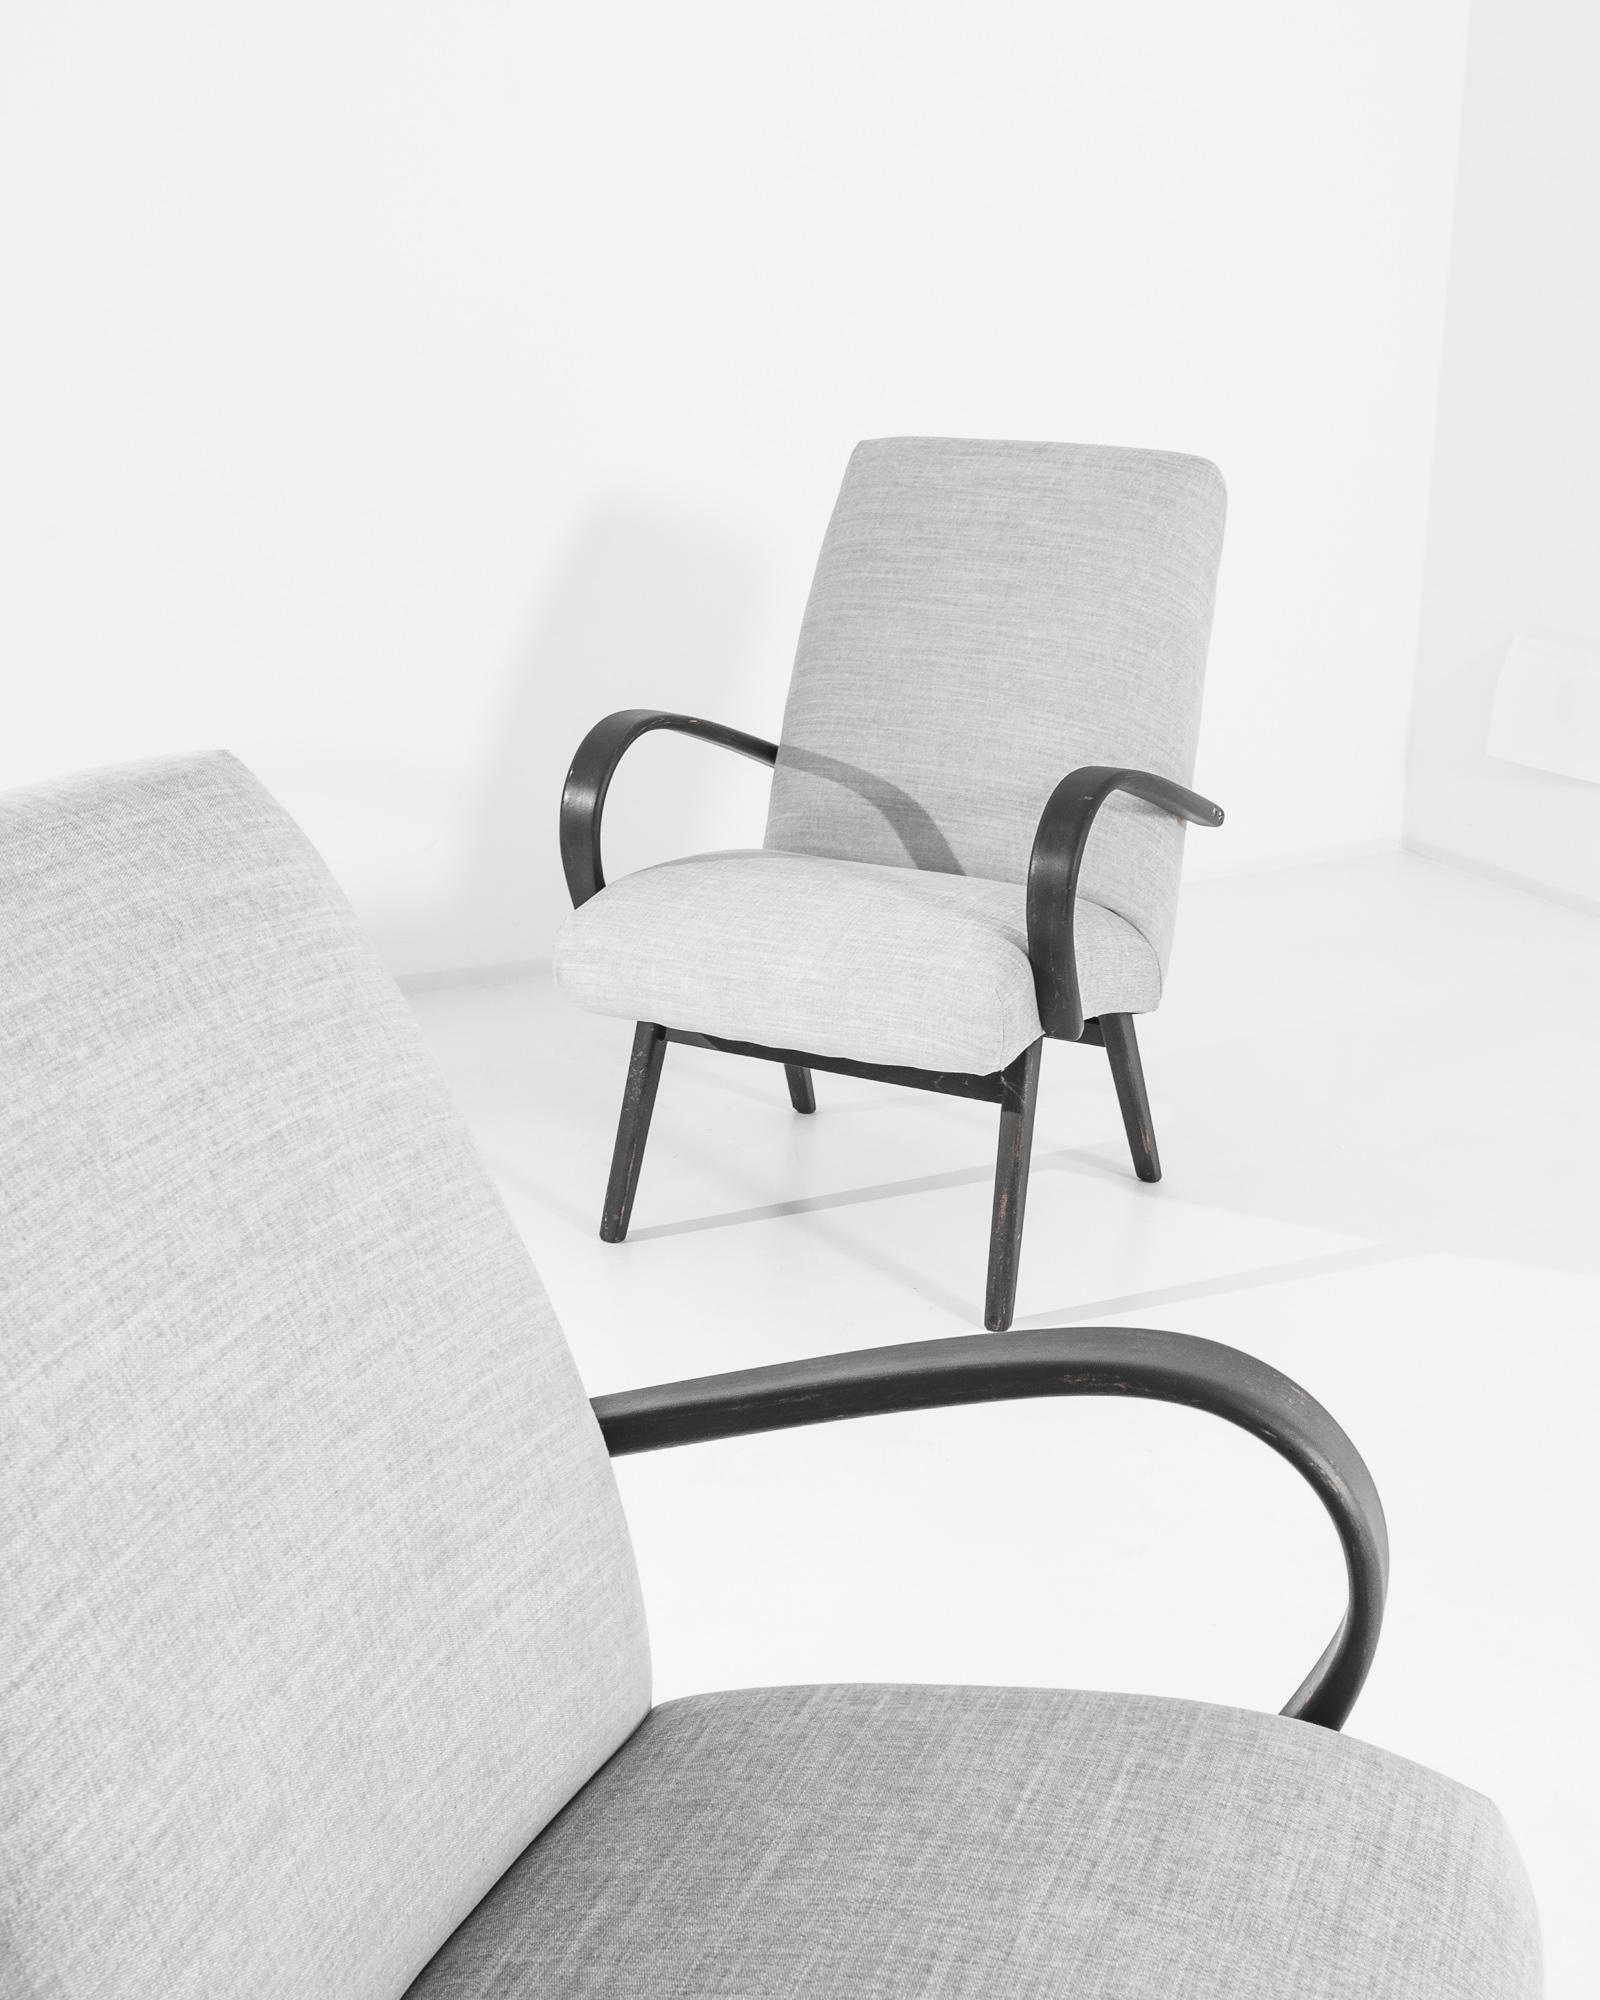 Une paire de fauteuils du designer de meubles tchèque Jindrich Halabala. Ce modèle des années 1950 est tapissé d'un tissu gris actualisé. Le ton apaisant de la bruyère a été choisi pour compléter le noir rêche de la structure en bois dur.